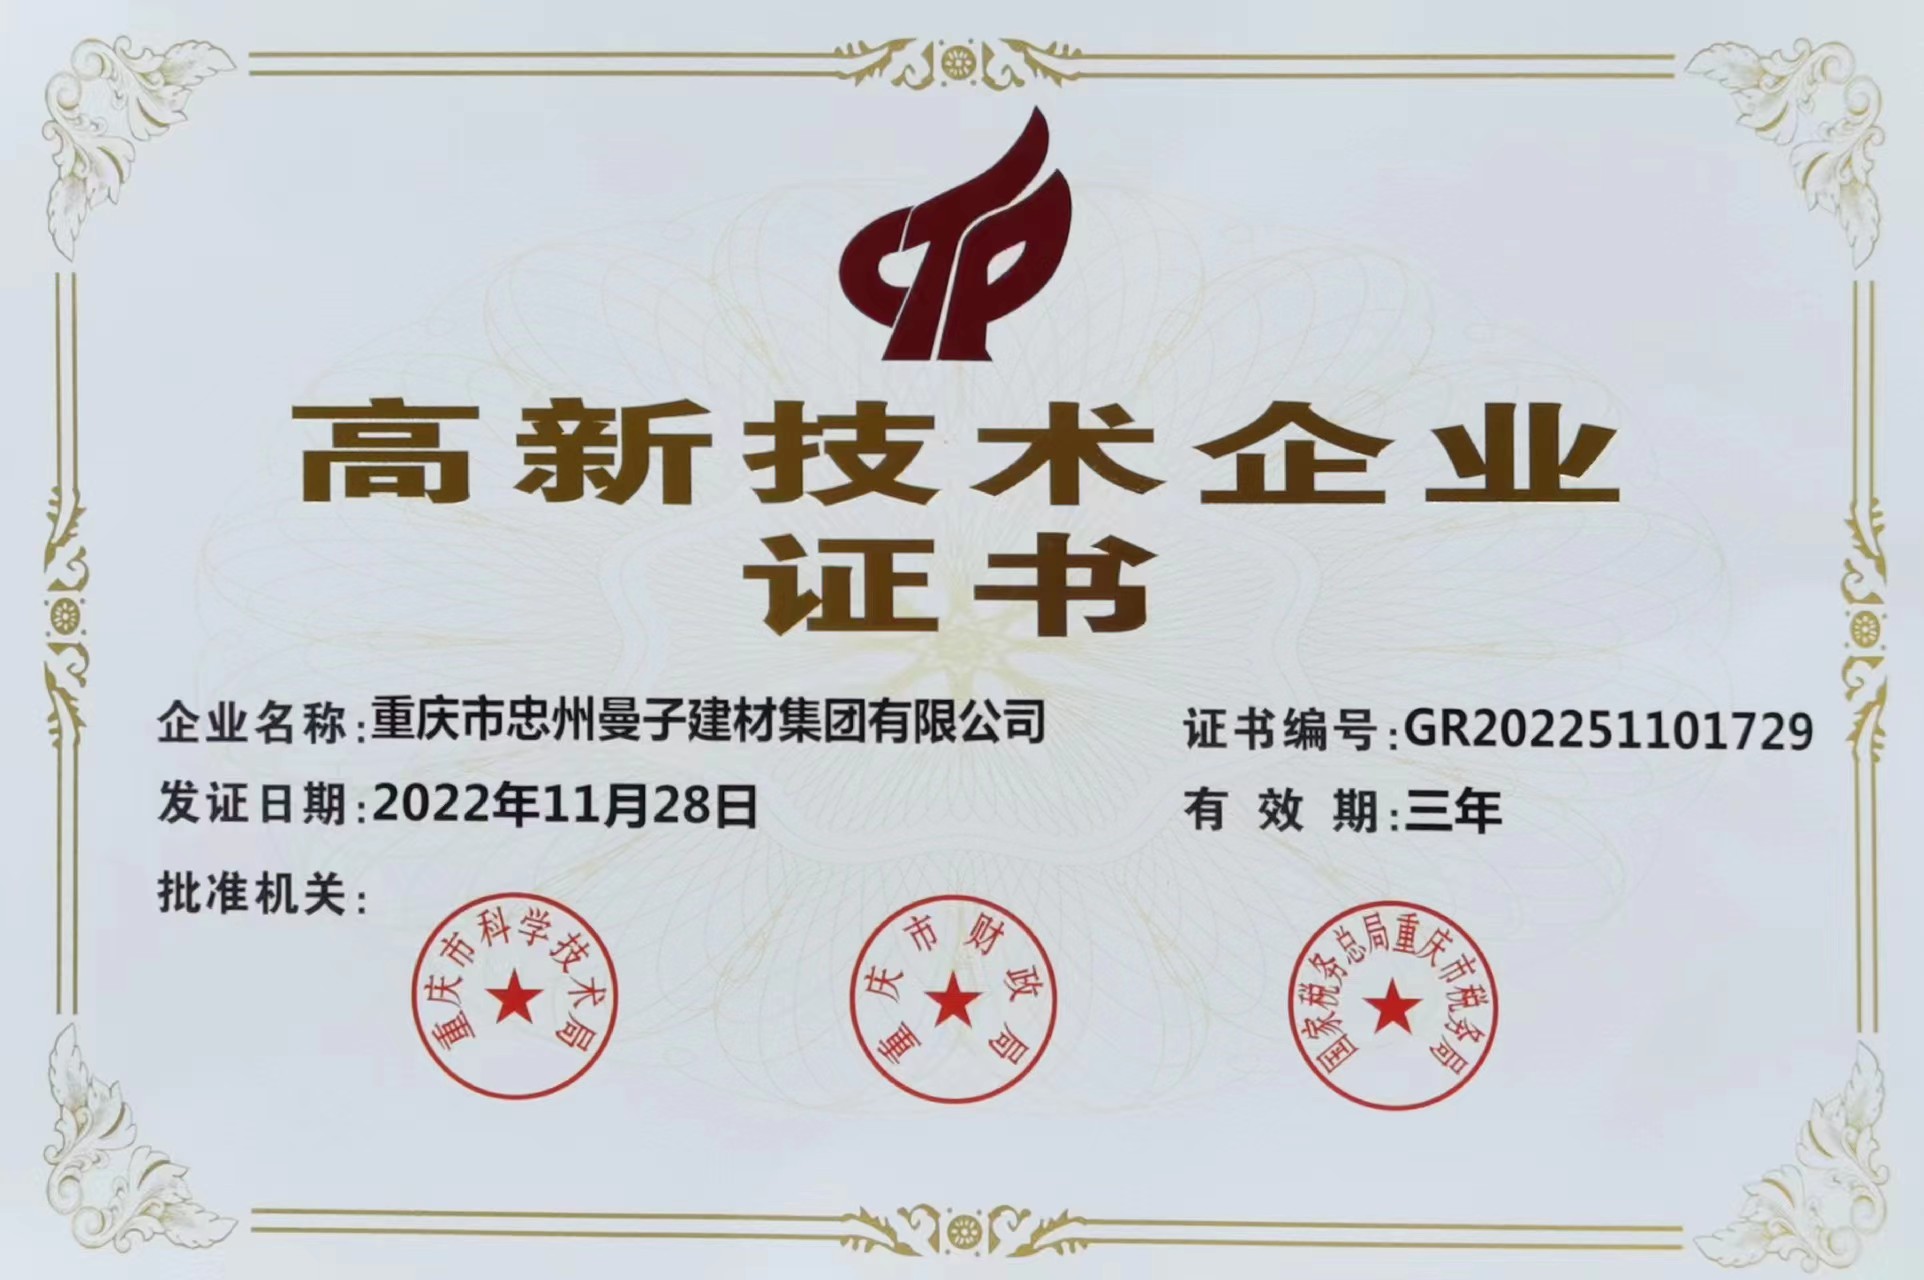 公司成功申報重慶市高新技術企業